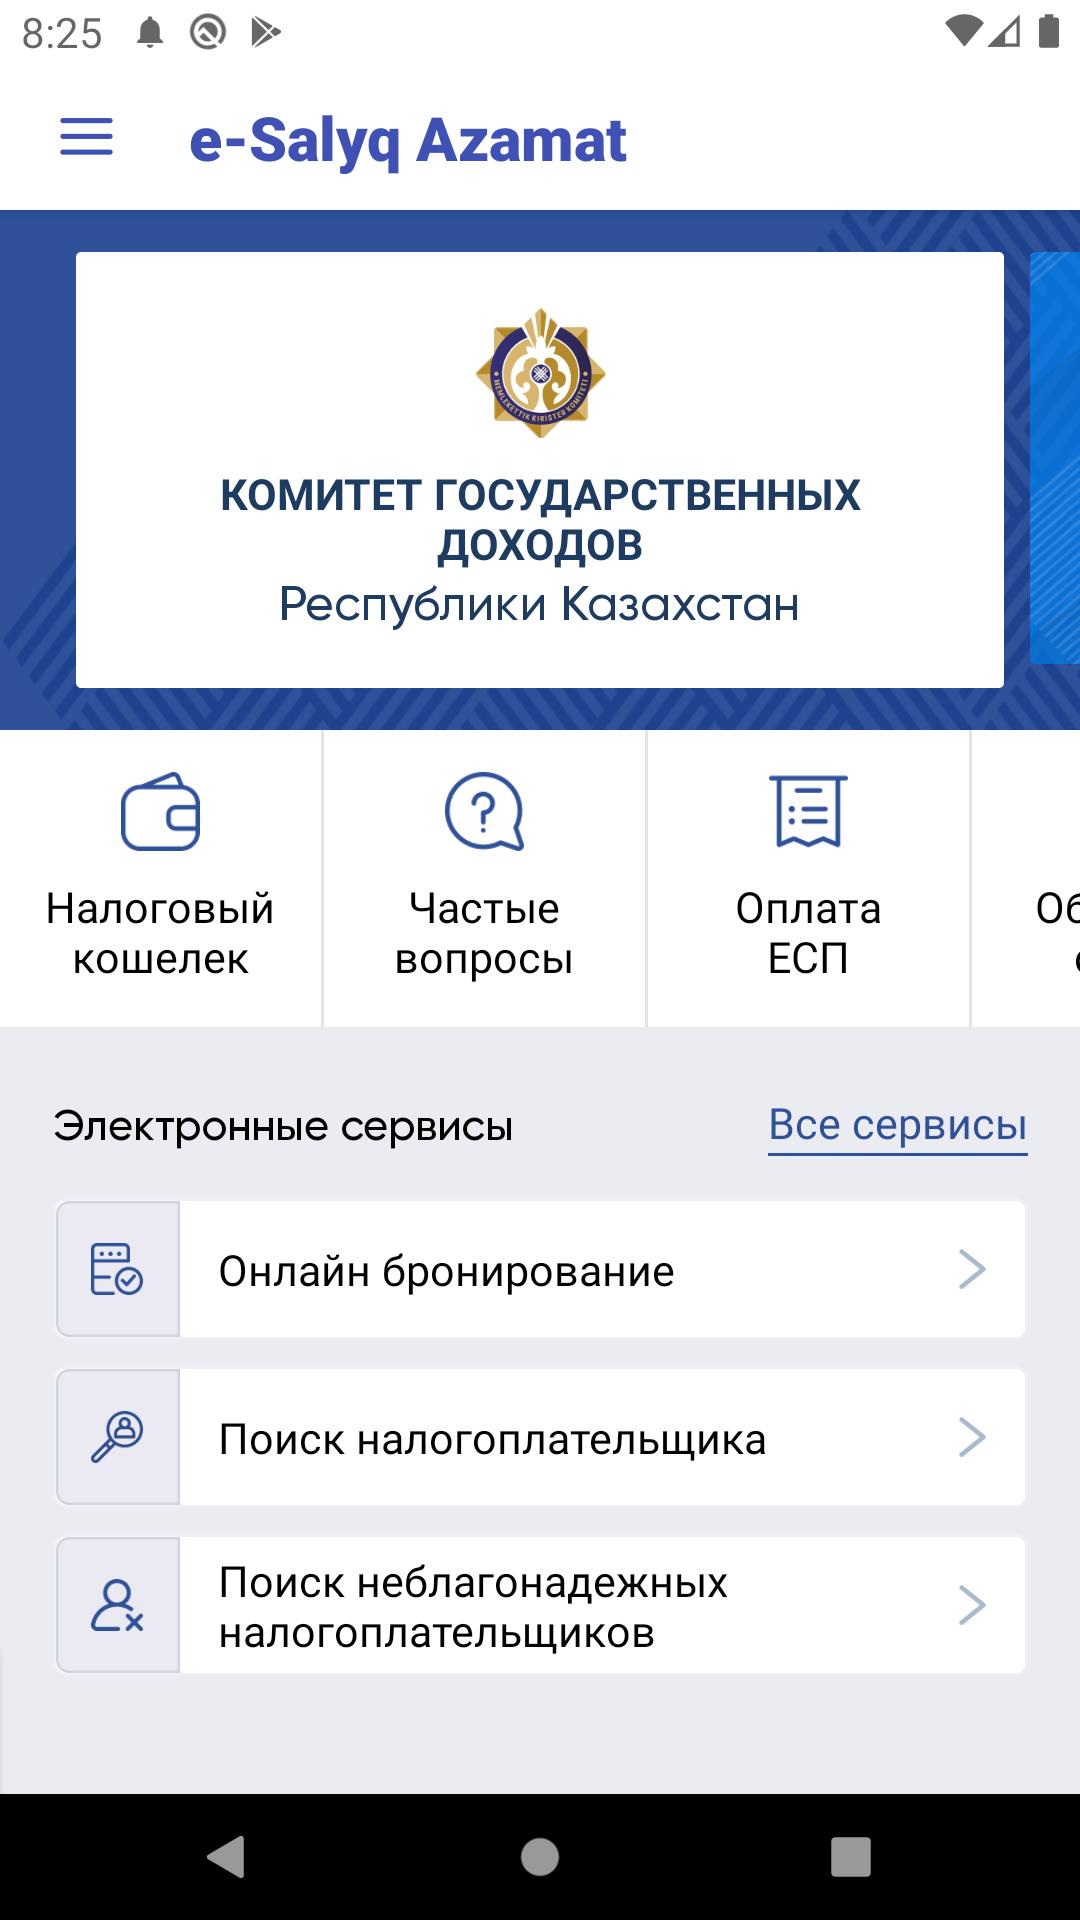 Cabinet kgd gov kz knp main. Мобильное приложение «e-salyq Azamat». Комитет государственных доходов РК.